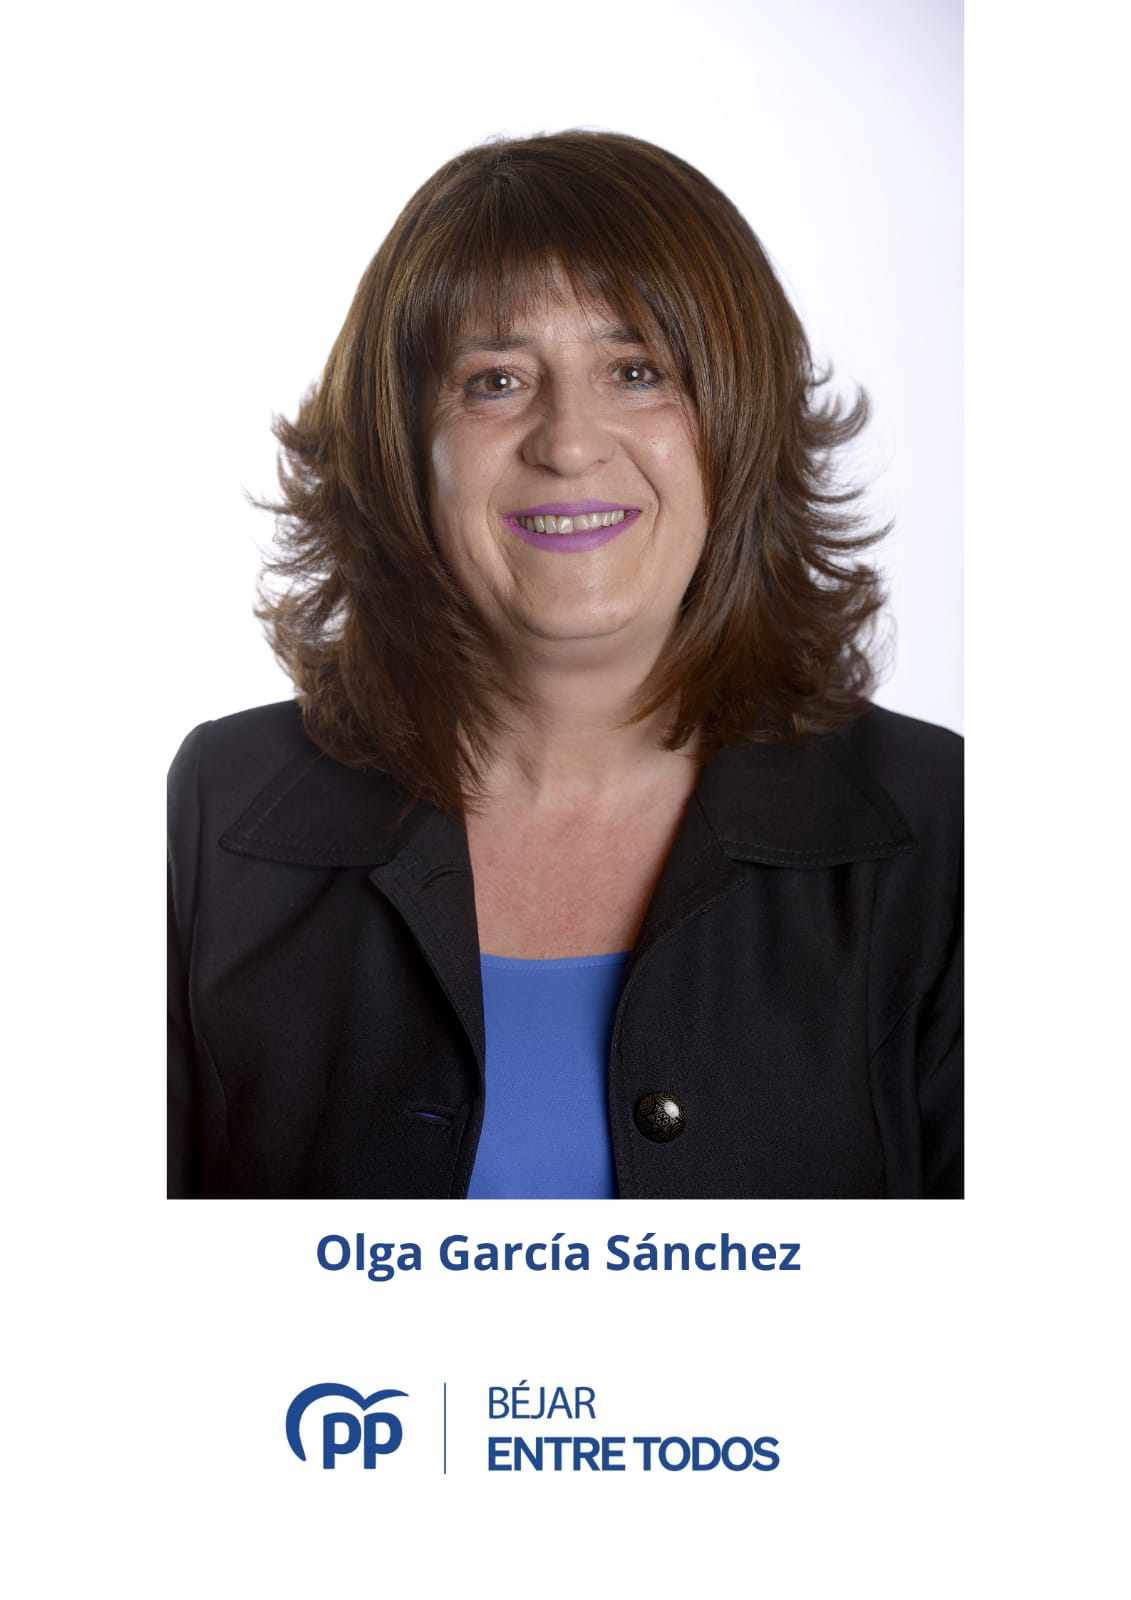 Olga García Sánchez